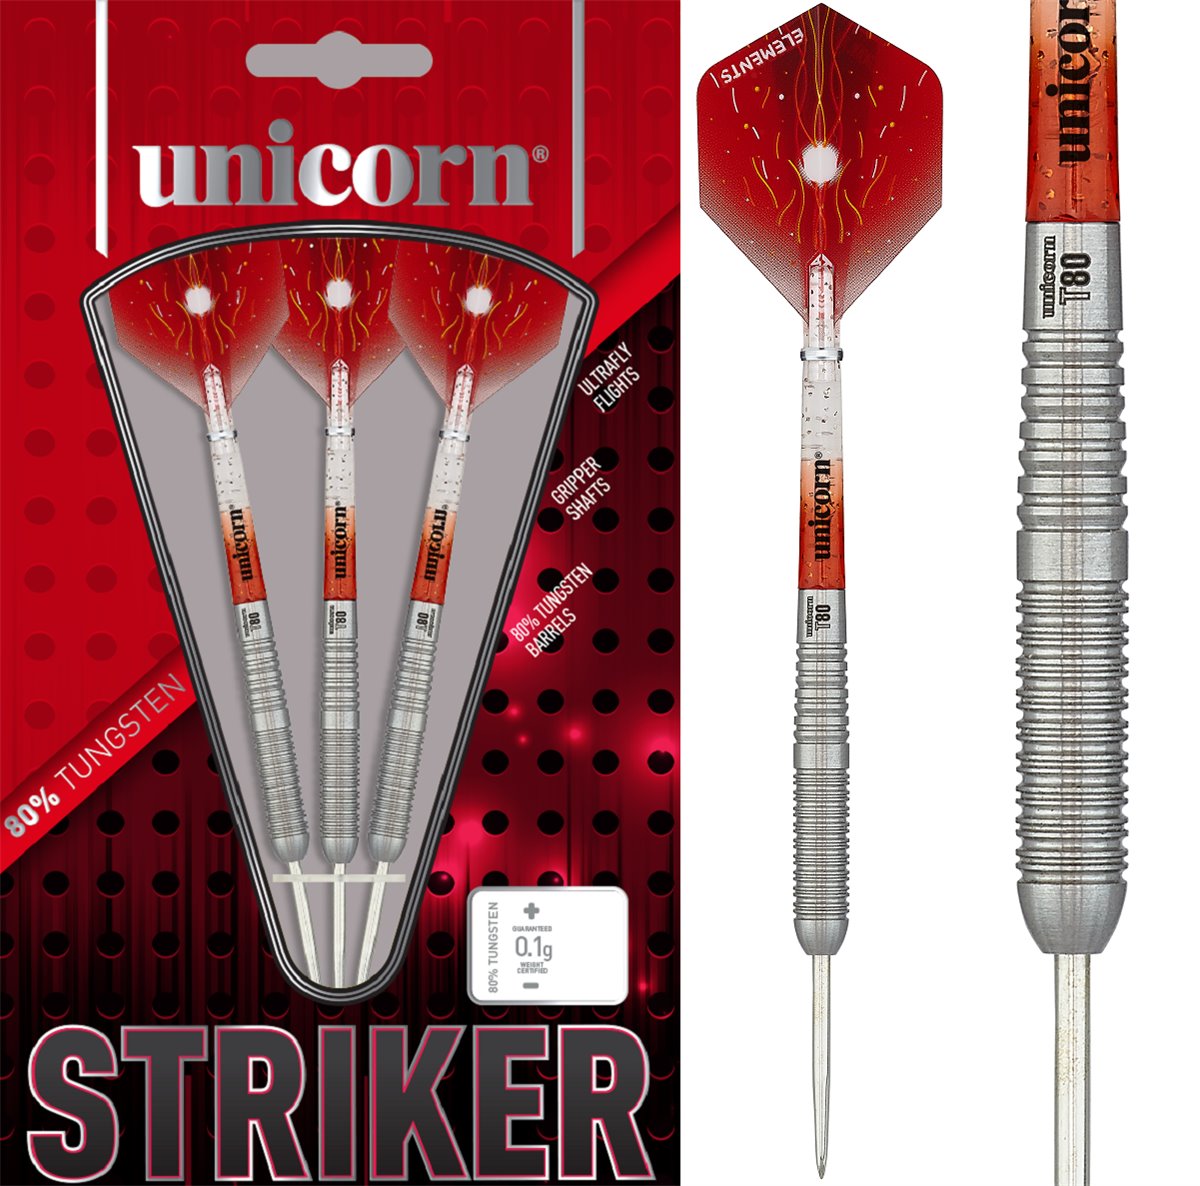 Unicorn Striker 6 80% Steeldart 20/22 Gramm Steeldarts